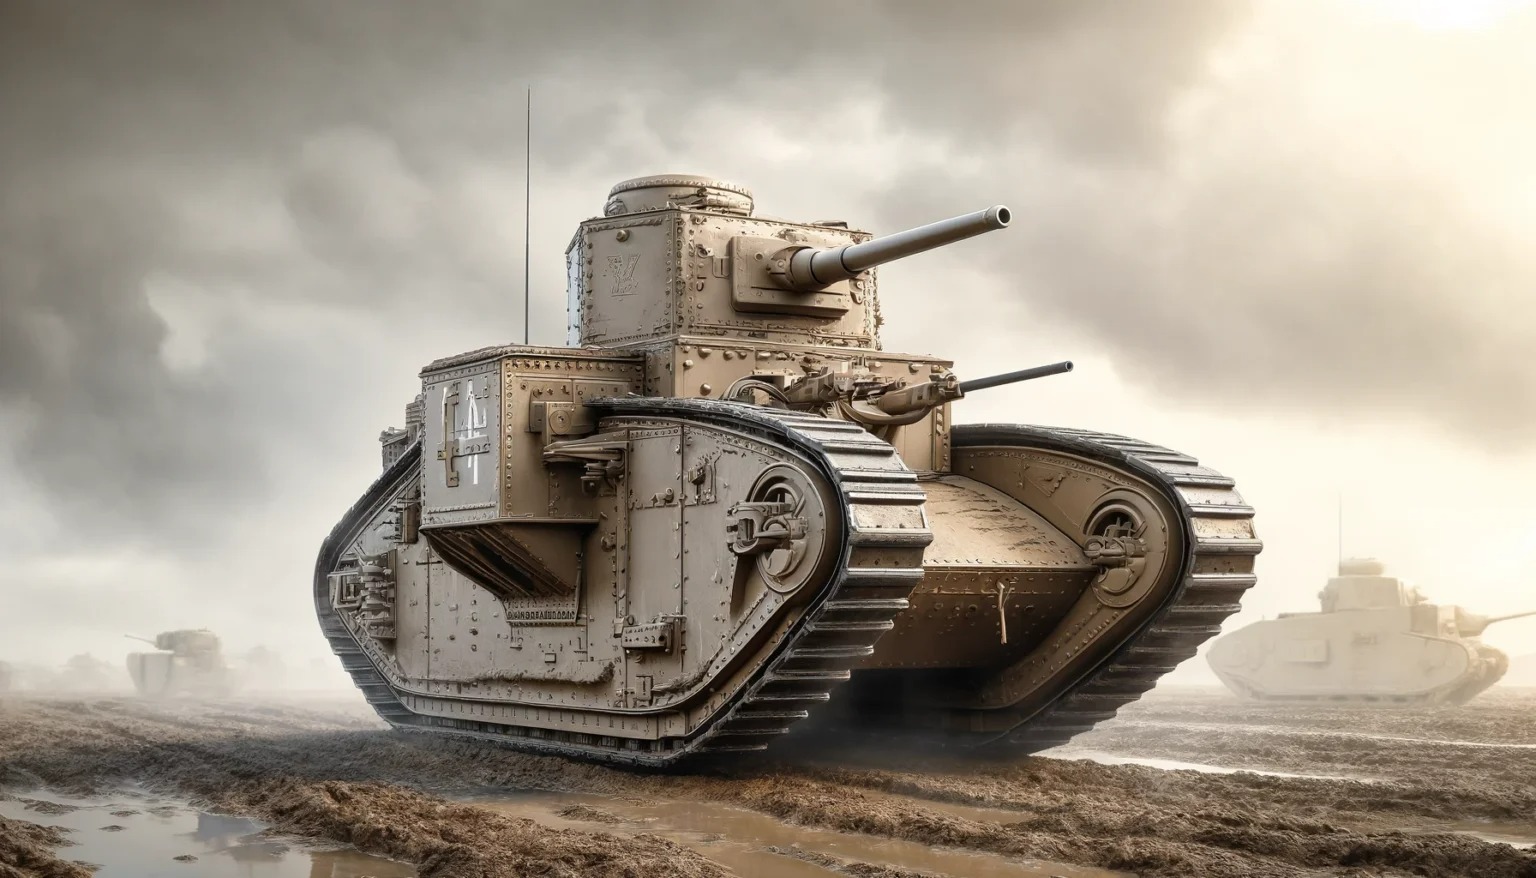 اولین تانک جهان چه شکلی بود؟ ۵ مورد از اولین تانک هایی که وارد میدان نبرد شدند (+عکس)